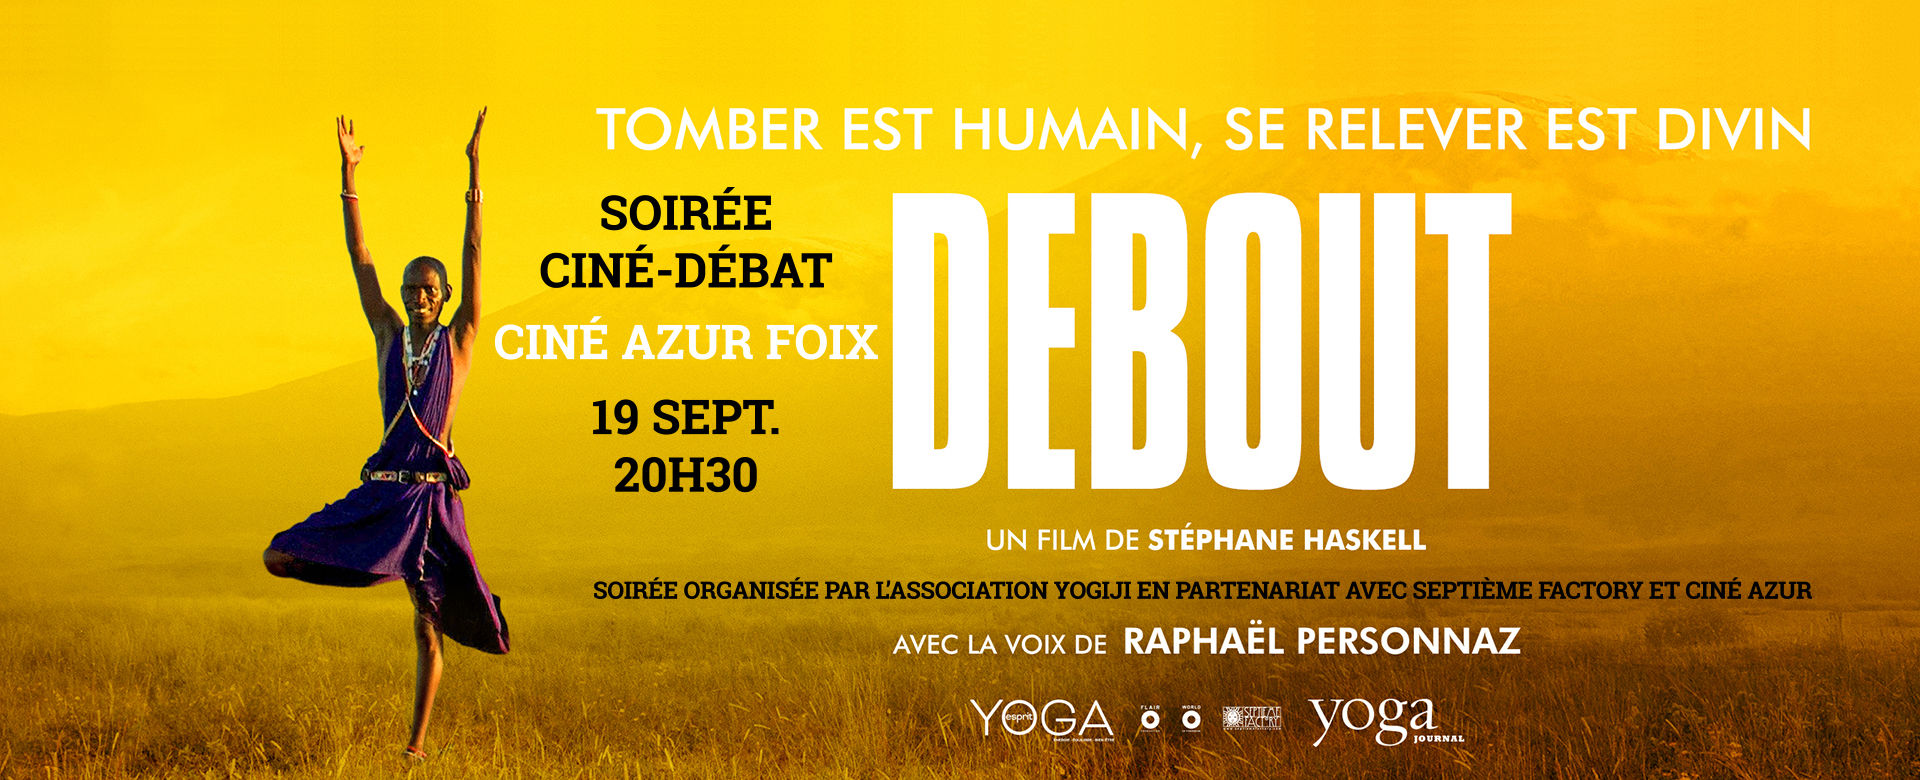 Ciné Débat 19 sept Ciné Azur Foix Debout - Stéphane Haskell - Yogiji